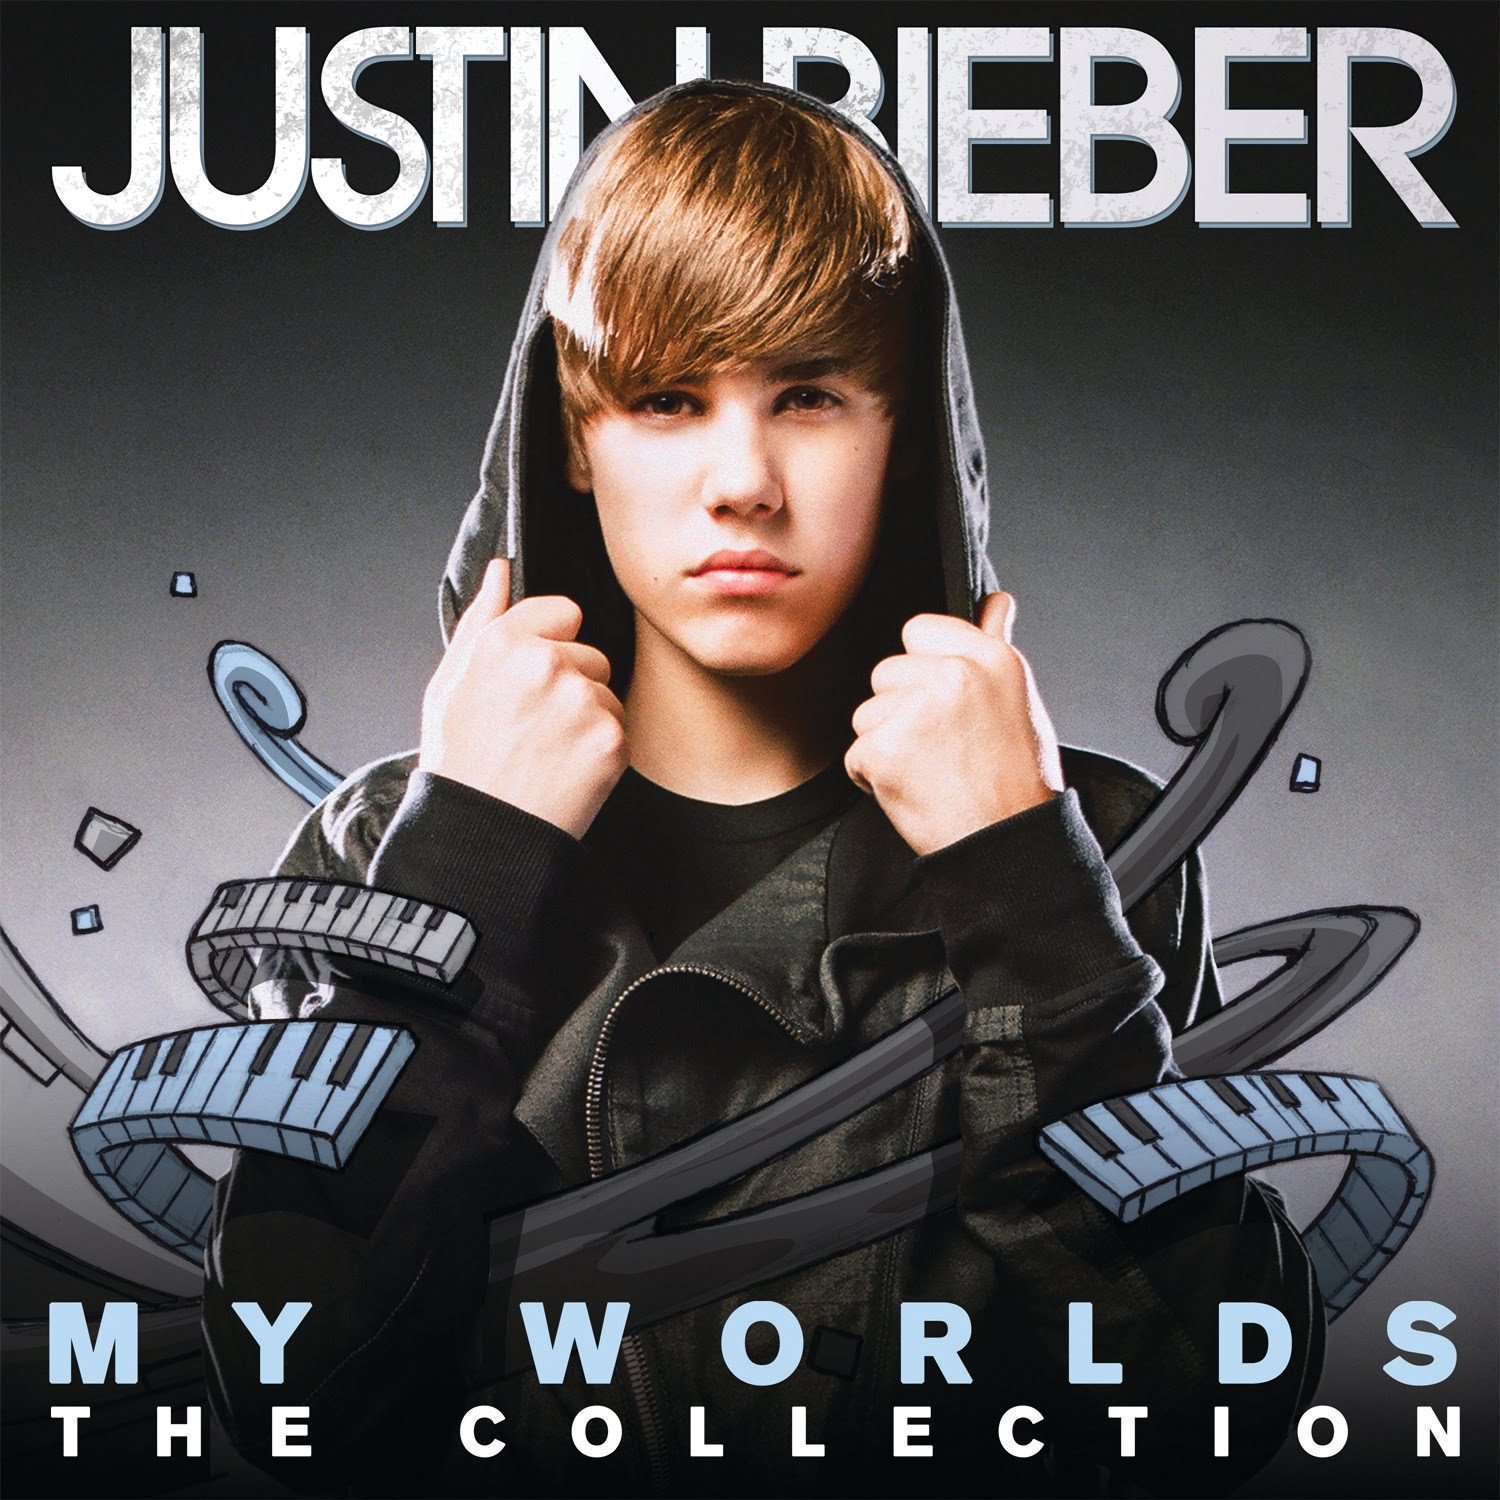 http://2.bp.blogspot.com/_JQthLu3soj4/TNhY9V2a84I/AAAAAAAAFDY/_tzV7K-IVrw/s1600/Justin-Bieber-My-Worlds-The-Collection-Official-Album-Cover.jpg